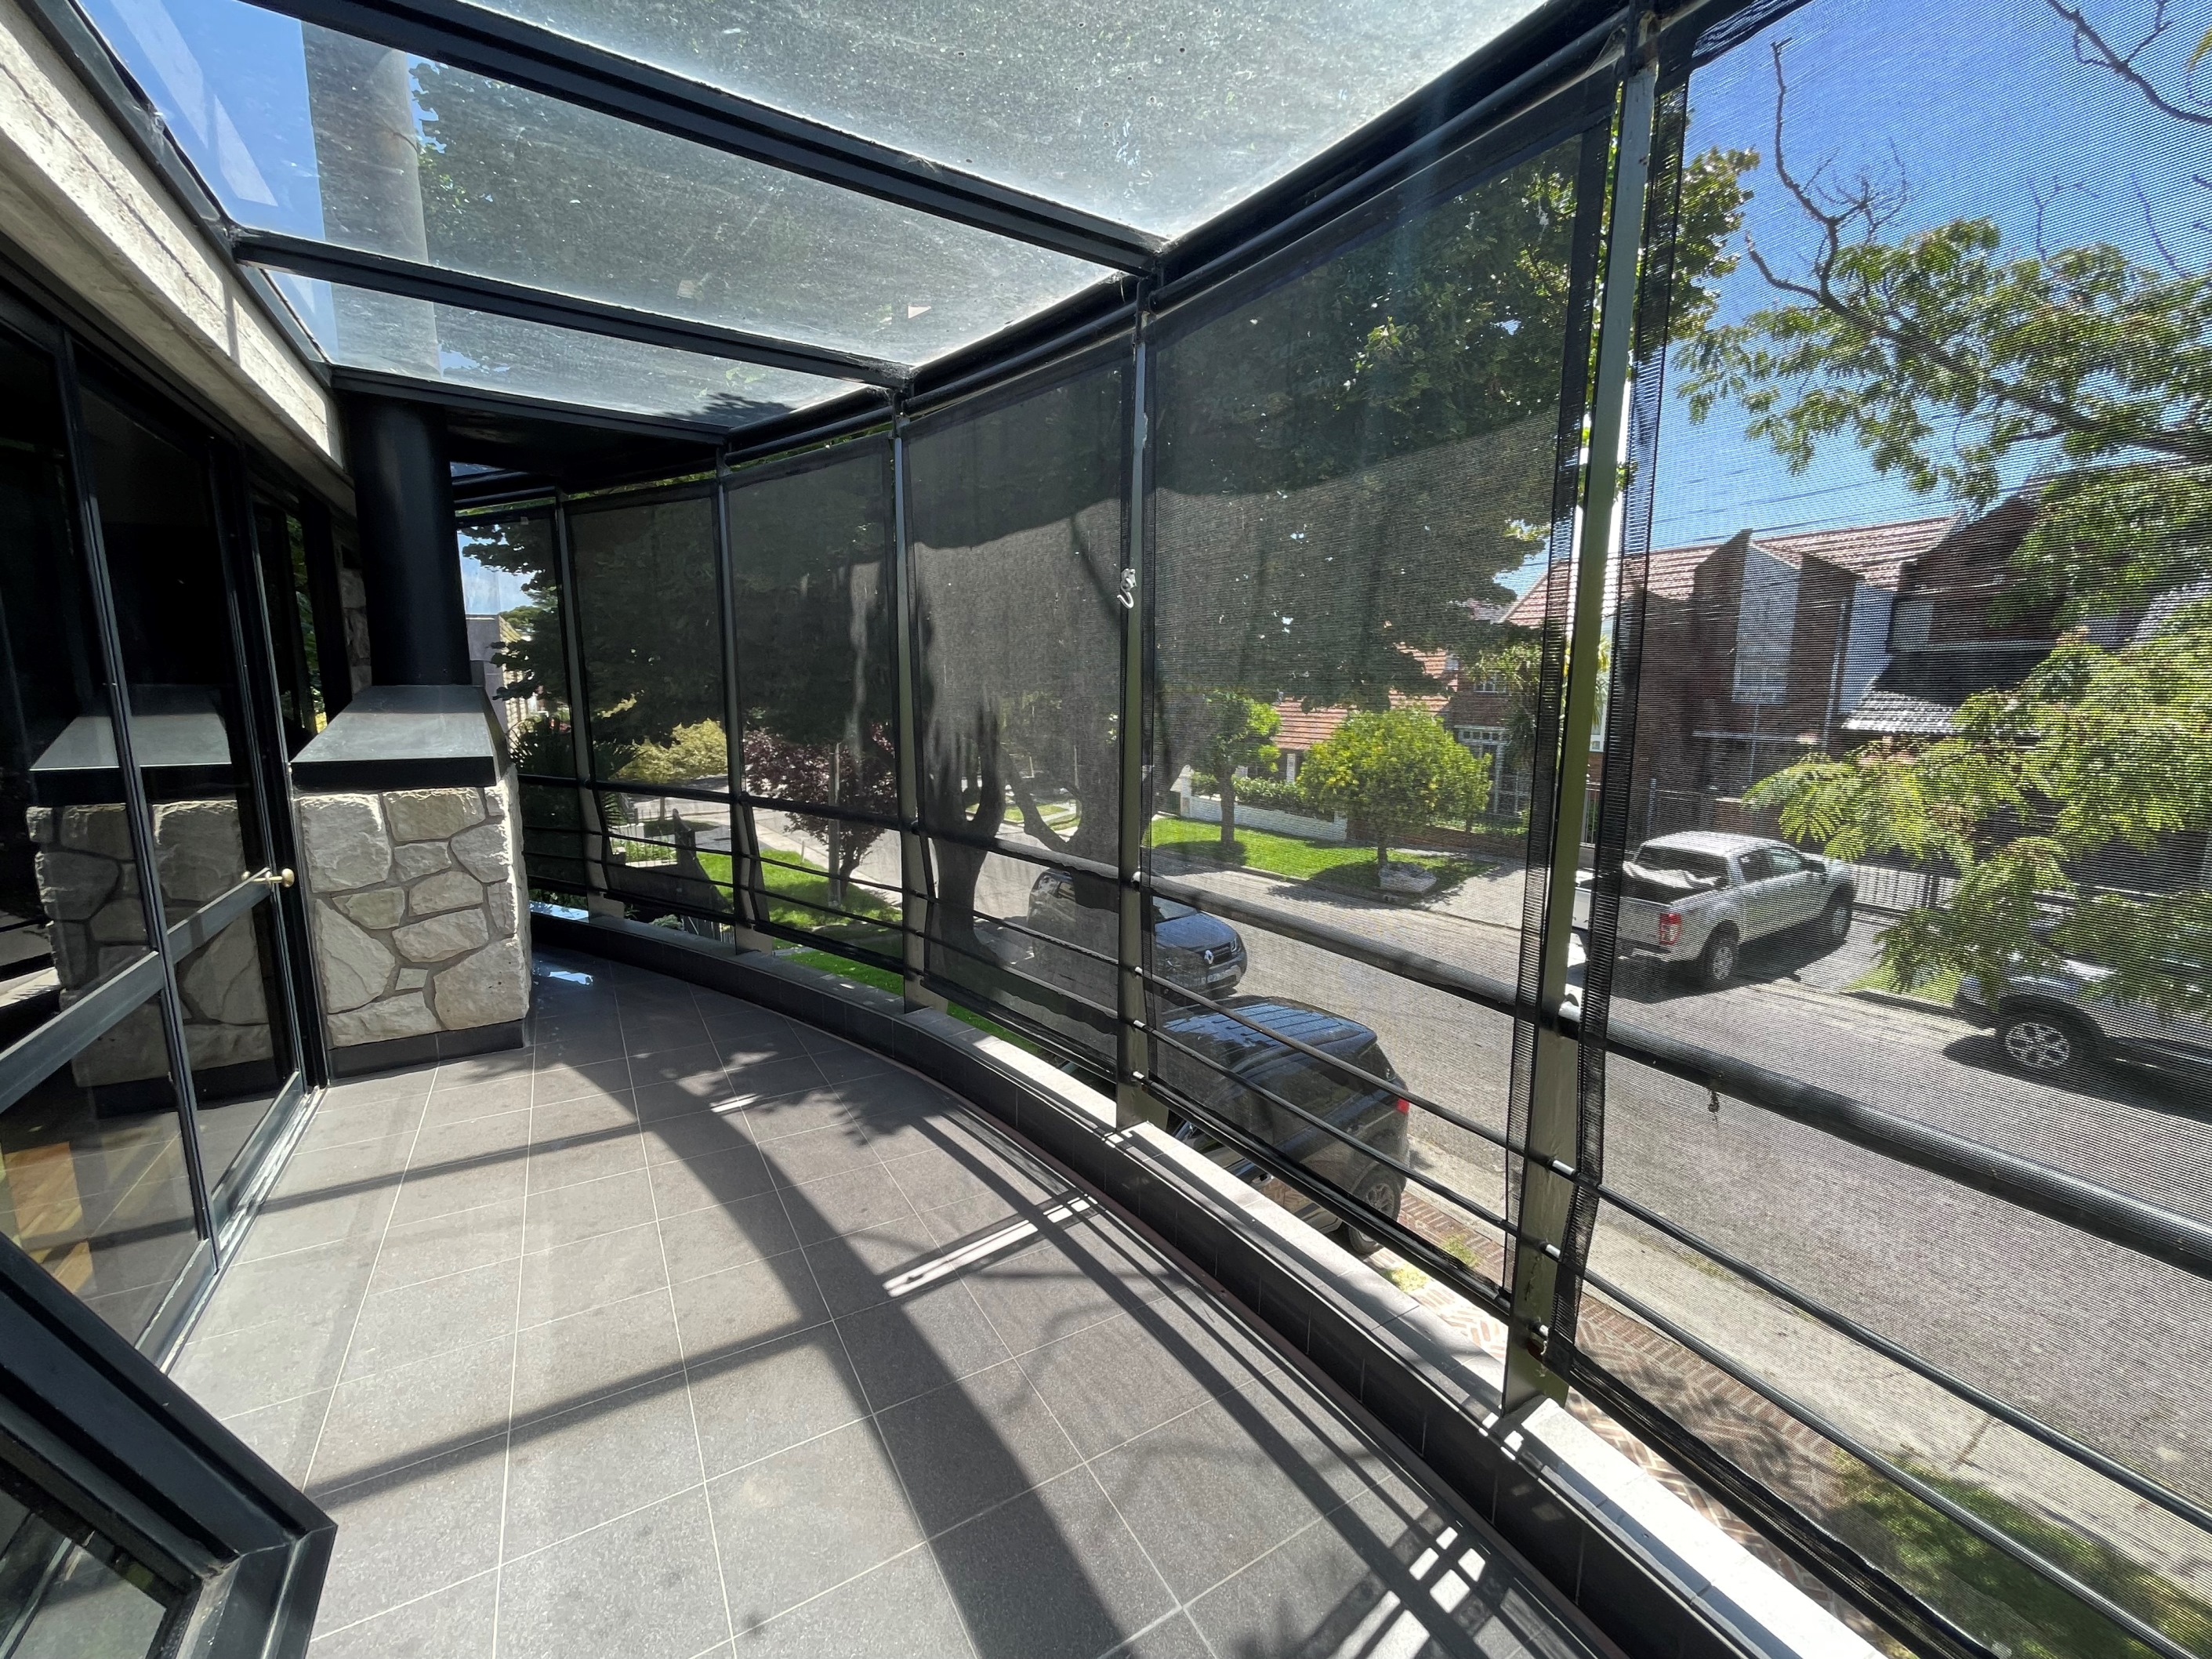 En venta. Chalet 4 ambientes con garage/quincho para 2 autos, parque y terraza. Zona San Carlos.